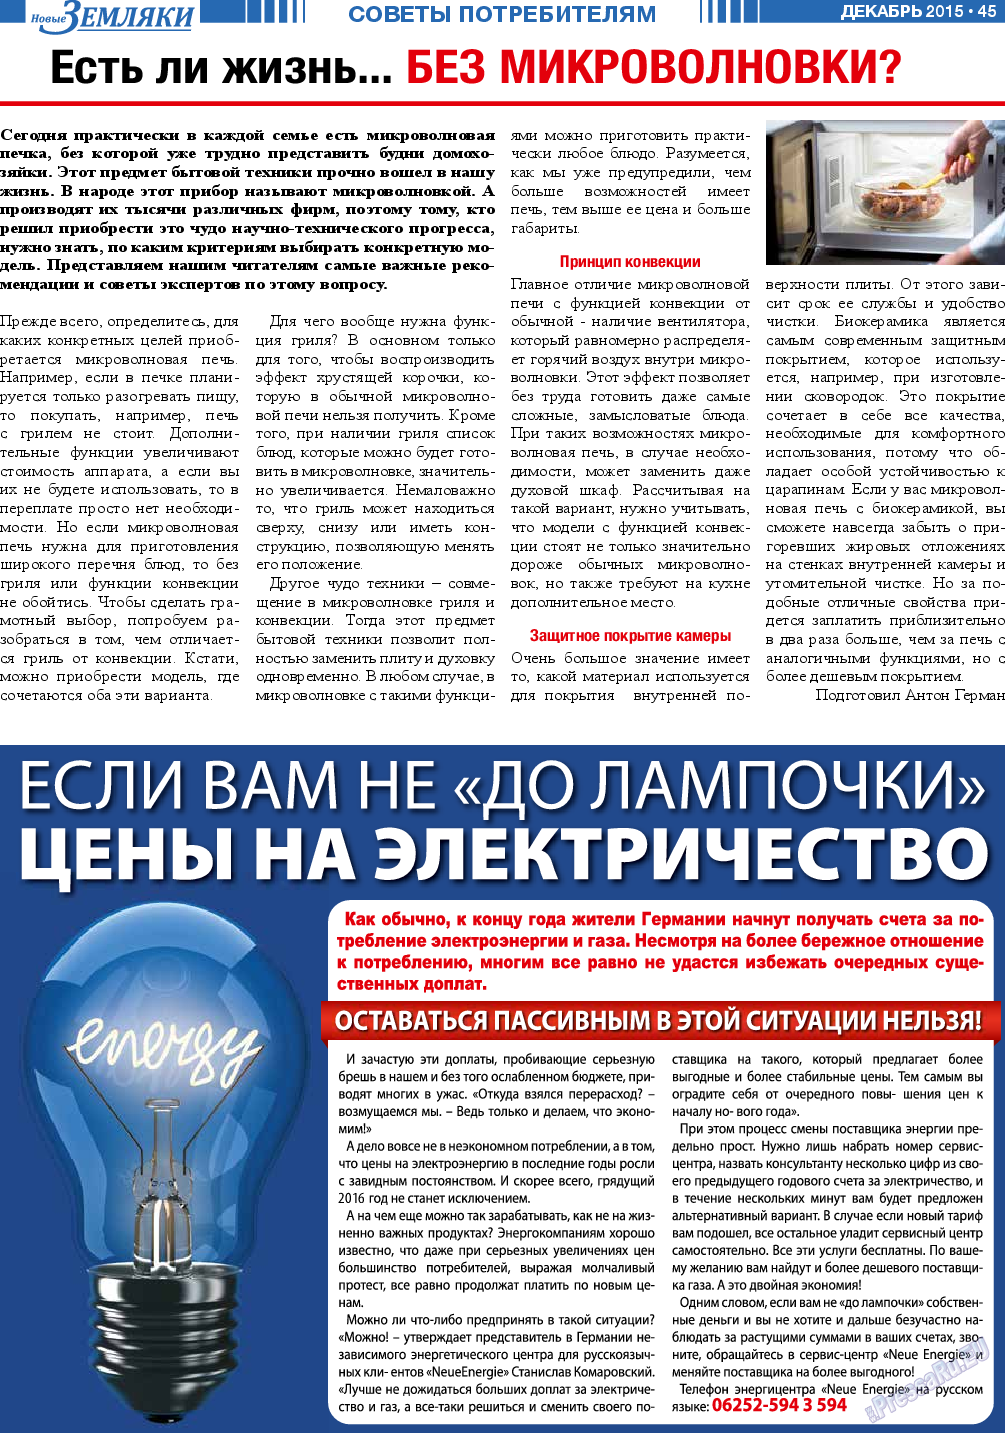 Новые Земляки, газета. 2015 №12 стр.45